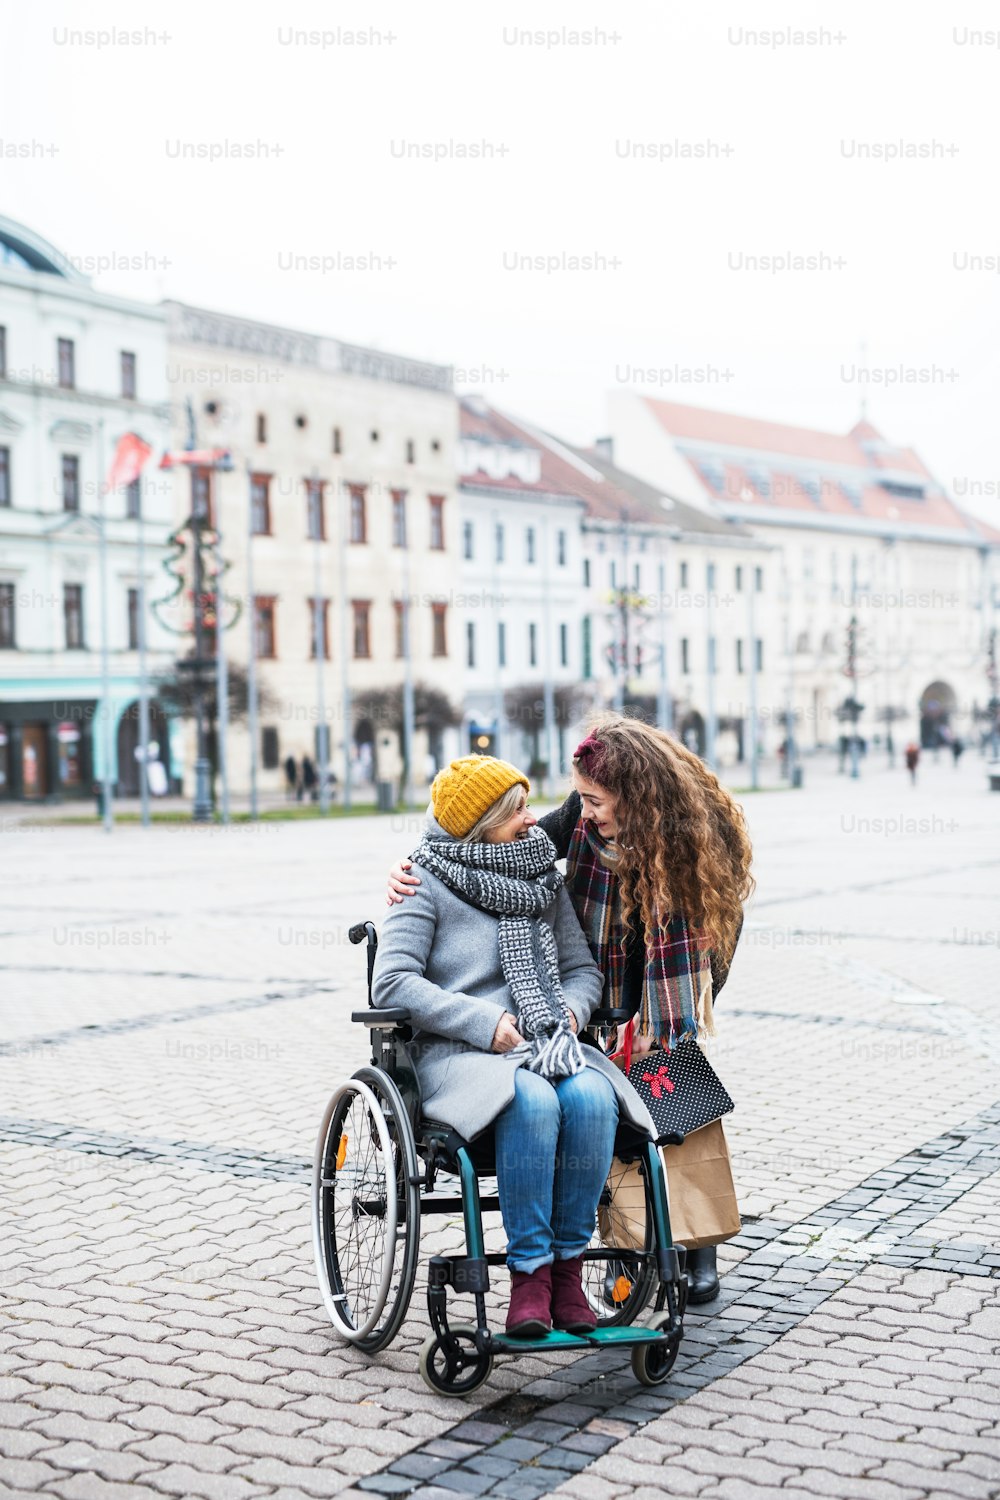 Una ragazza adolescente con nonna disabile in sedia a rotelle all'aperto per strada in inverno, parlando.